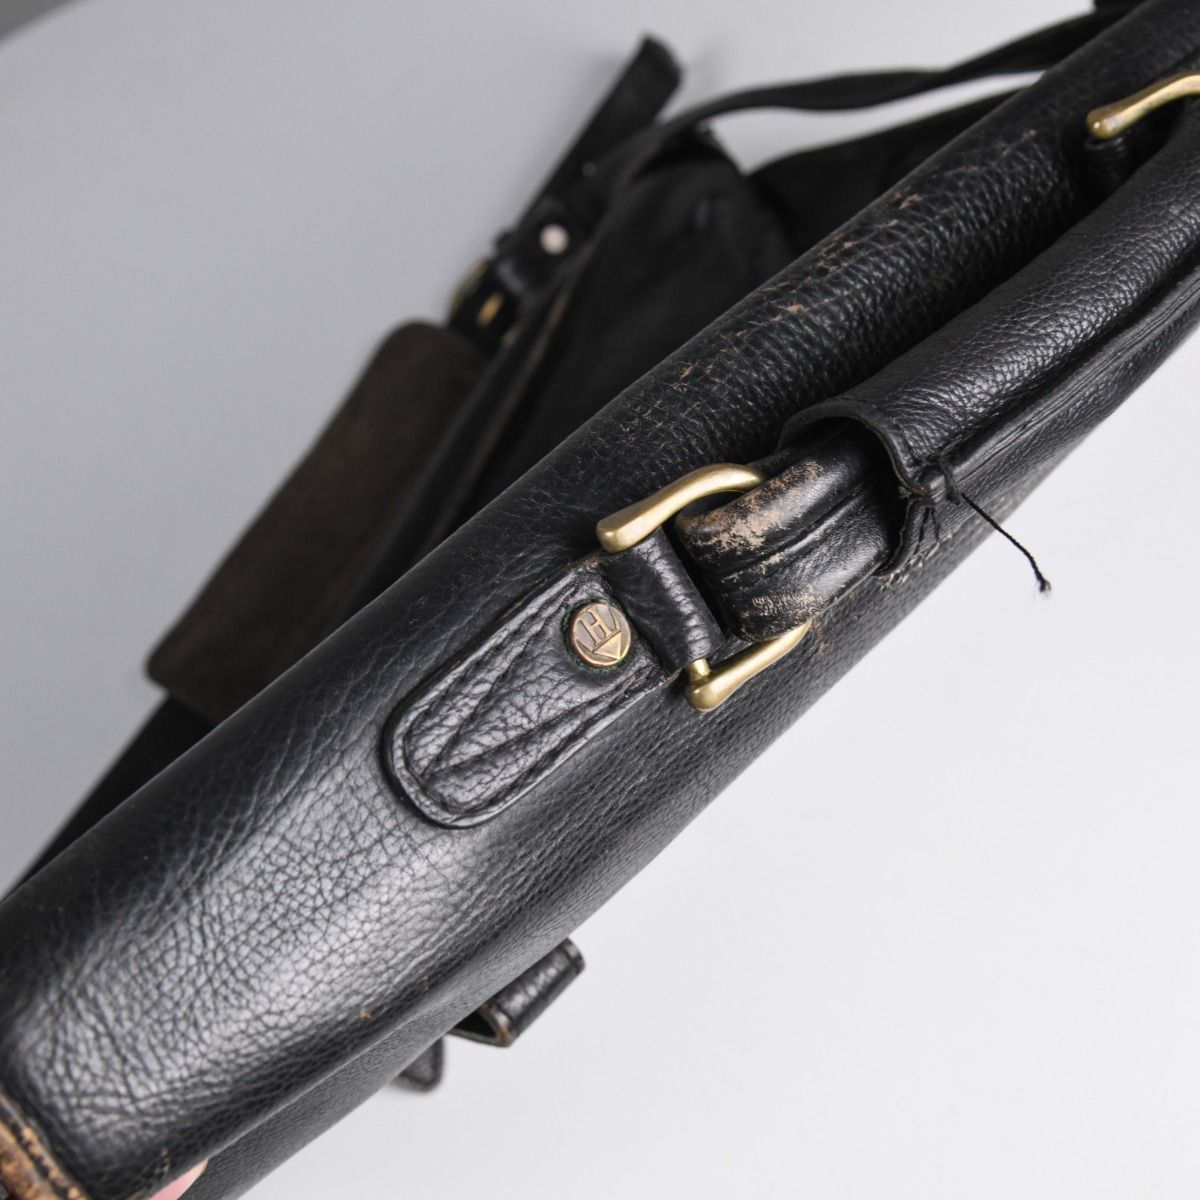 Vintage Black Leather Messenger Bag